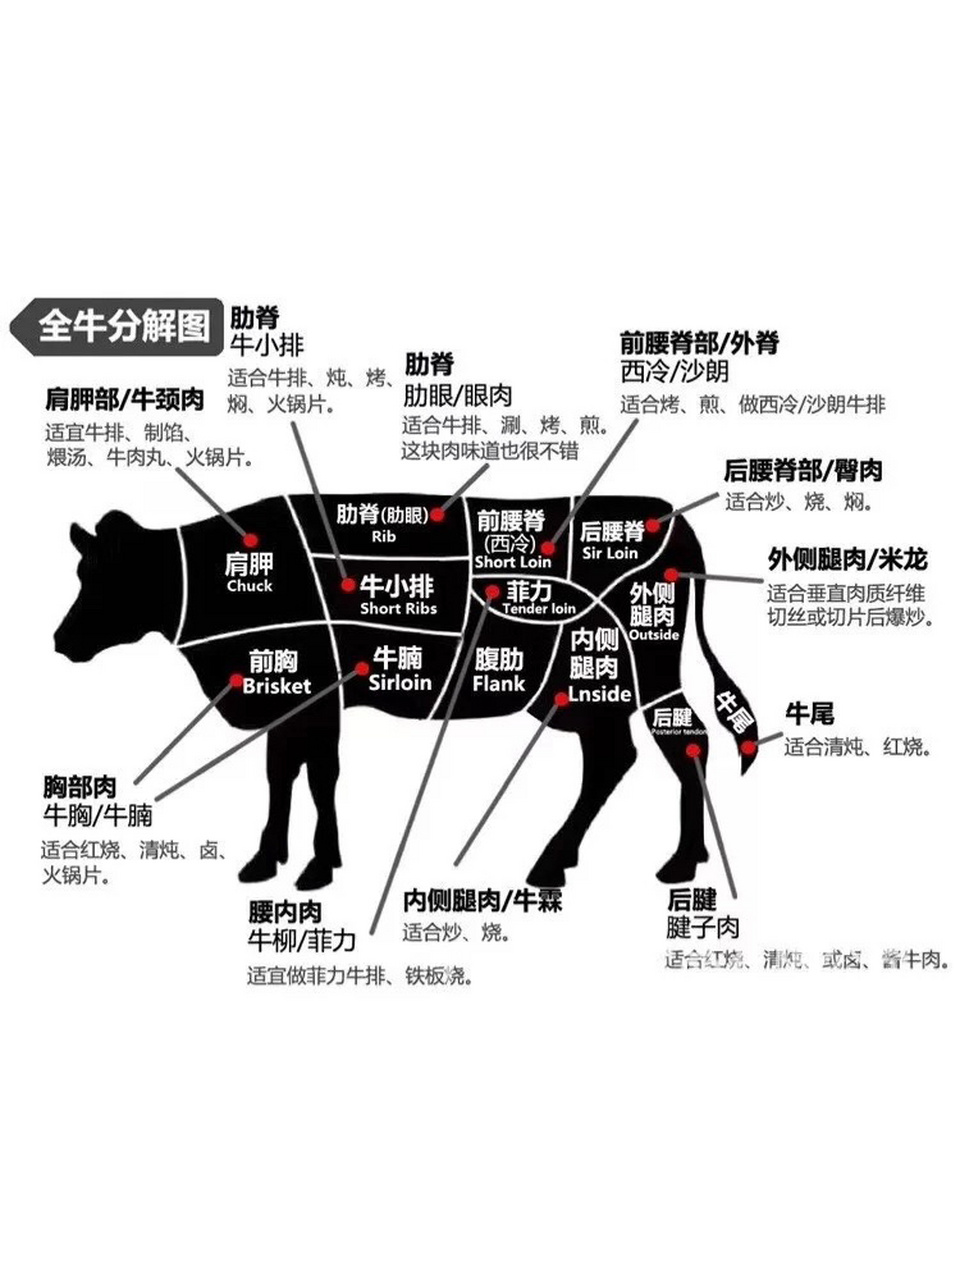 全牛分解图 我想这应该是最全的了,快看一下平常吃的都是哪里的肉